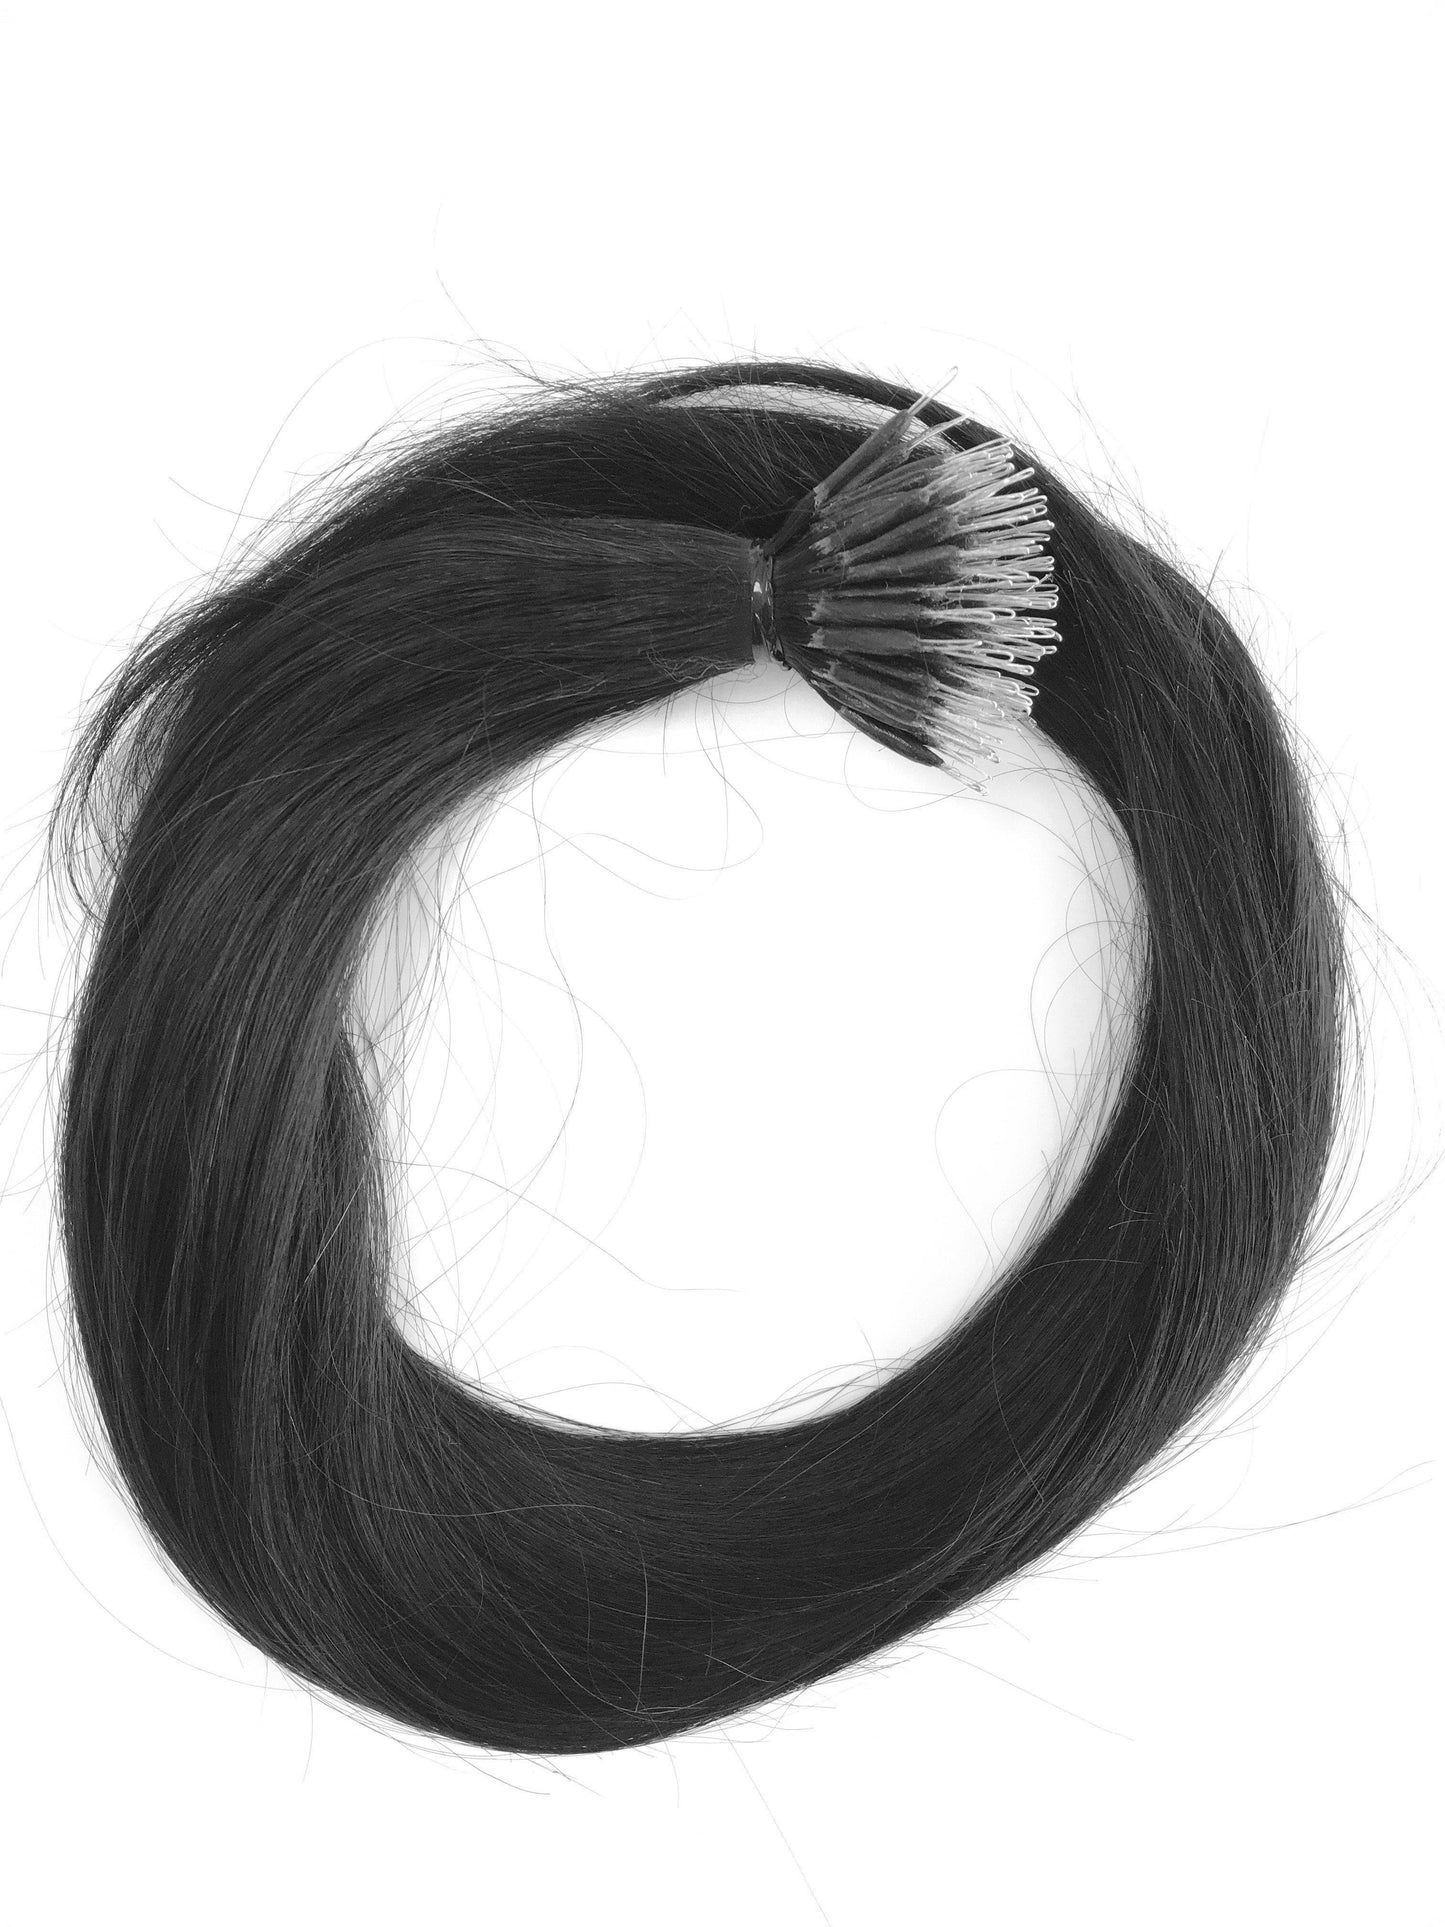 Cheveux humains brésiliens vierges remy, extensions nano-anneaux, droits, 24'', vierges non colorés. expédition rapide ! - cheveux vierges et beauté, les meilleures extensions de cheveux, de vrais cheveux humains vierges.